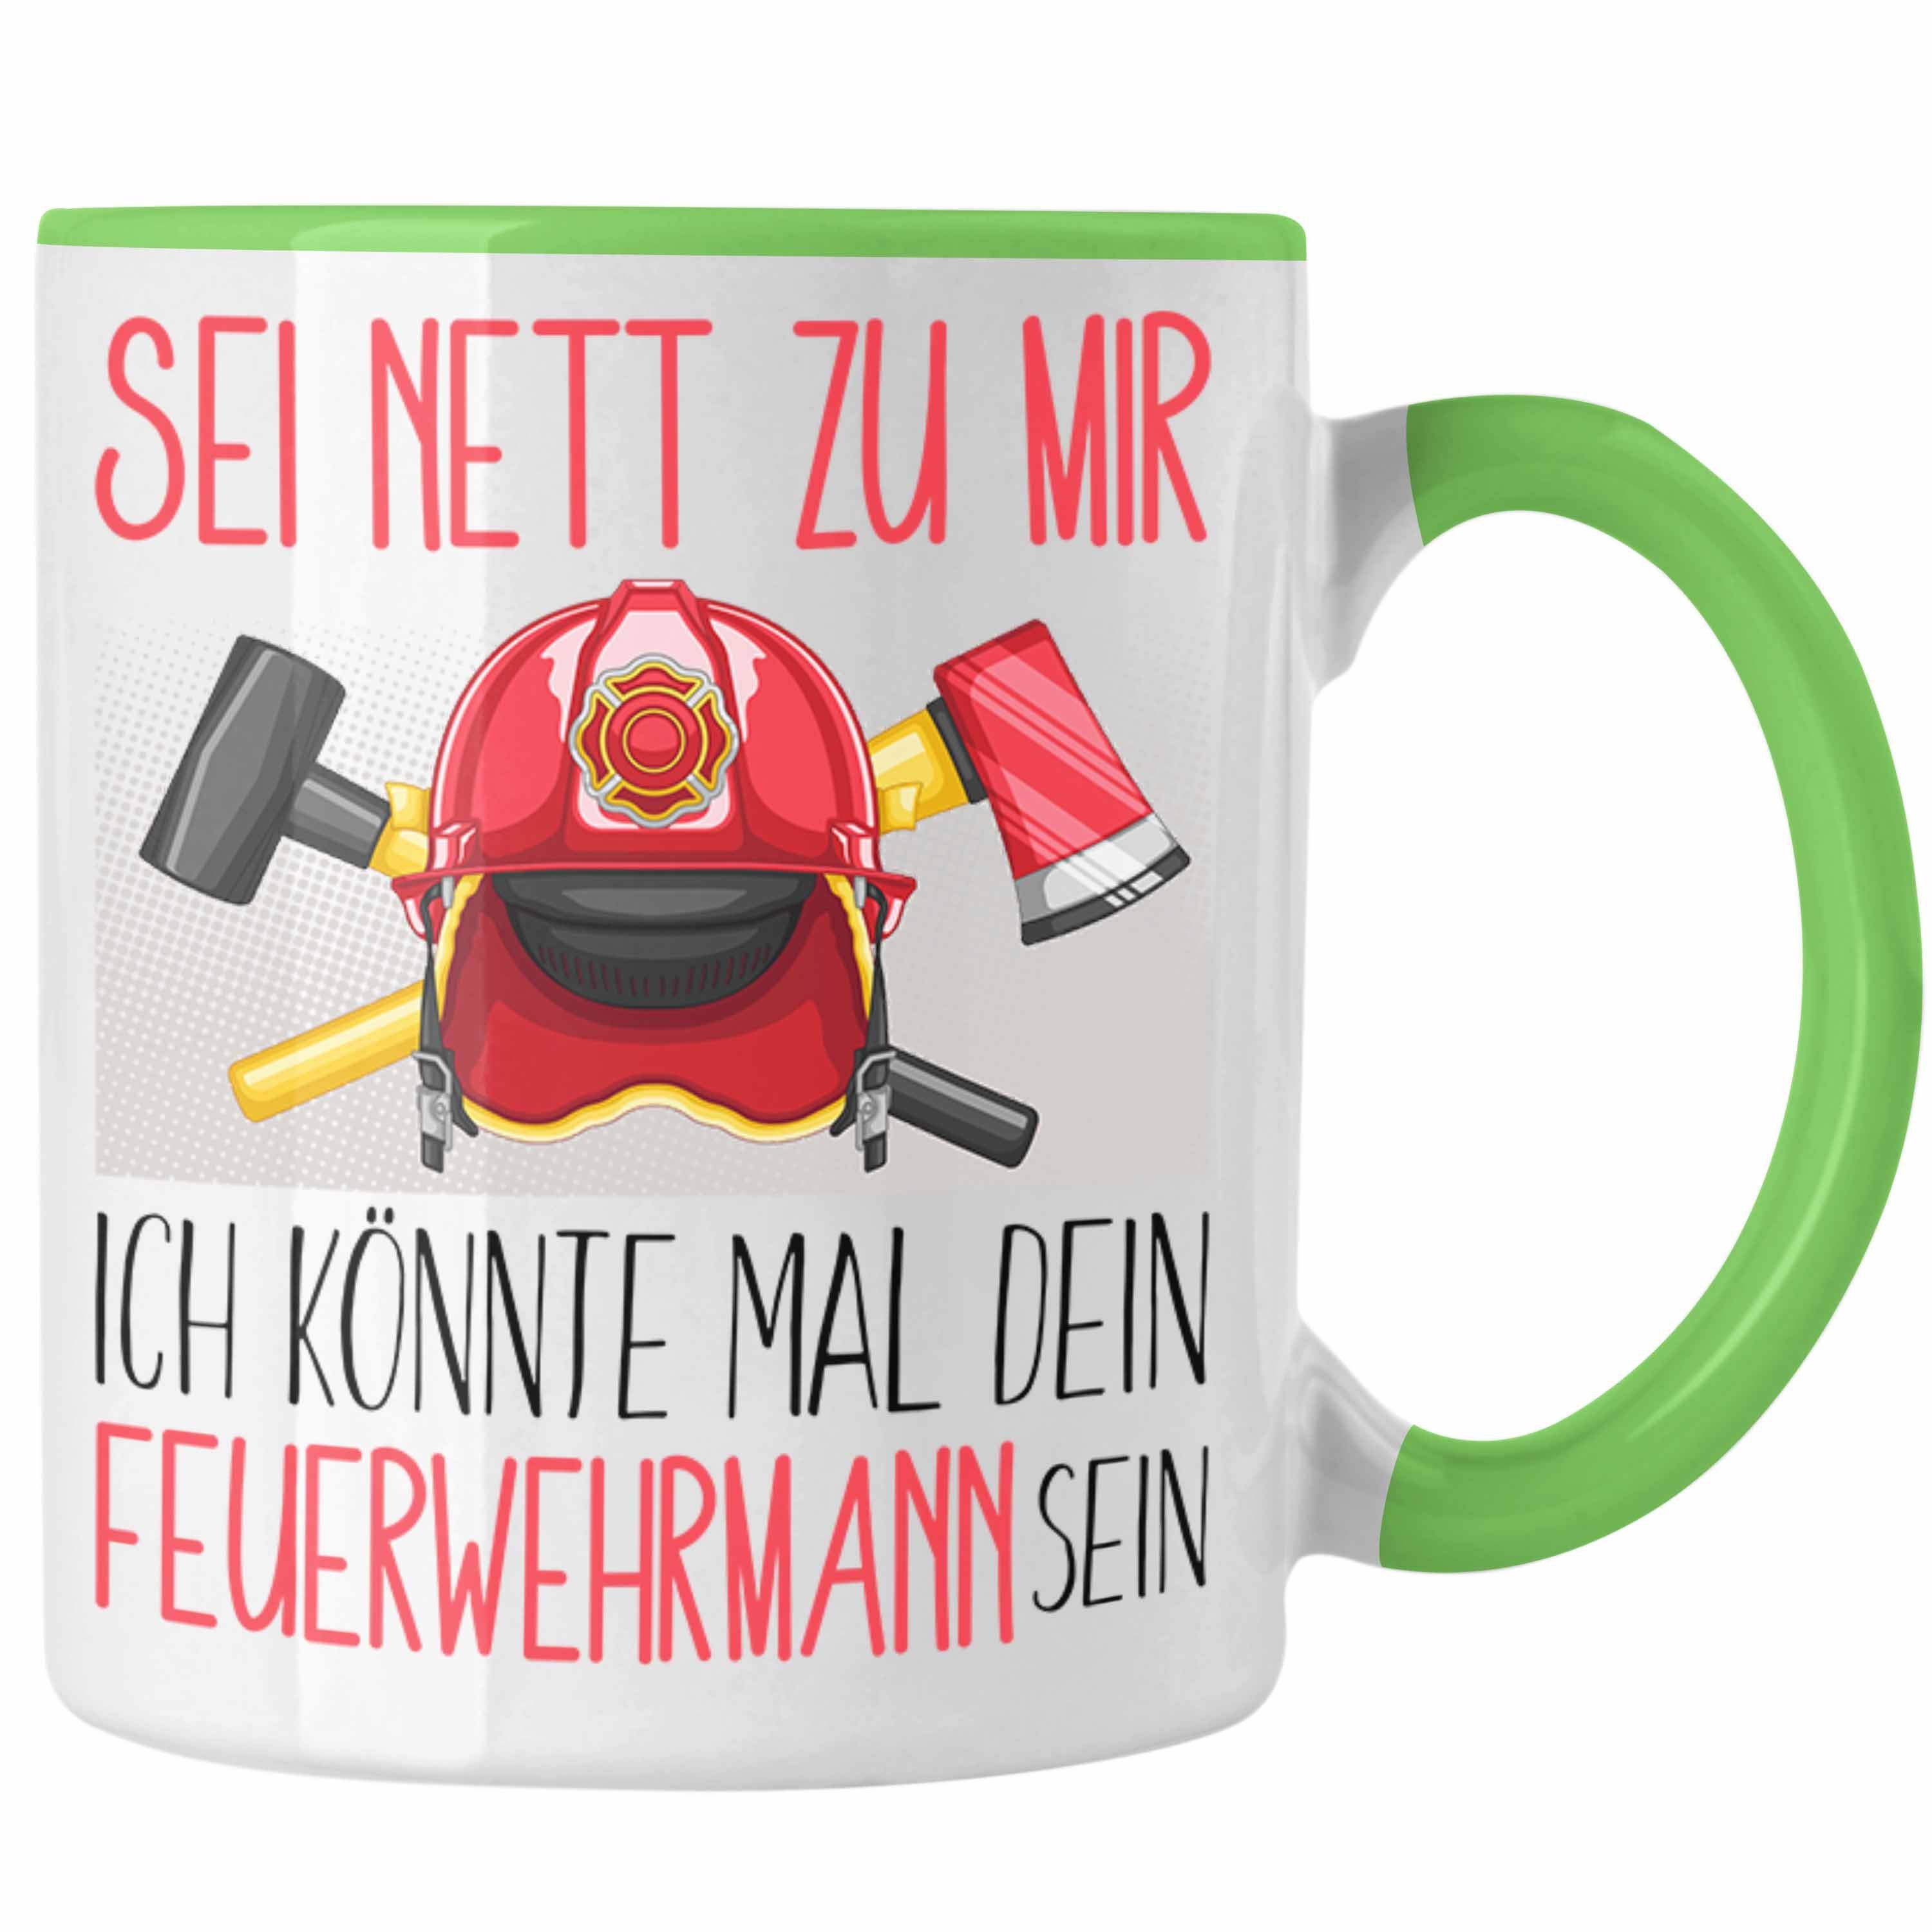 Trendation Tasse Feuerwehrmann Ausbildung Tasse Geschenk Feuerwehr Geschenkidee Sei Net Grün